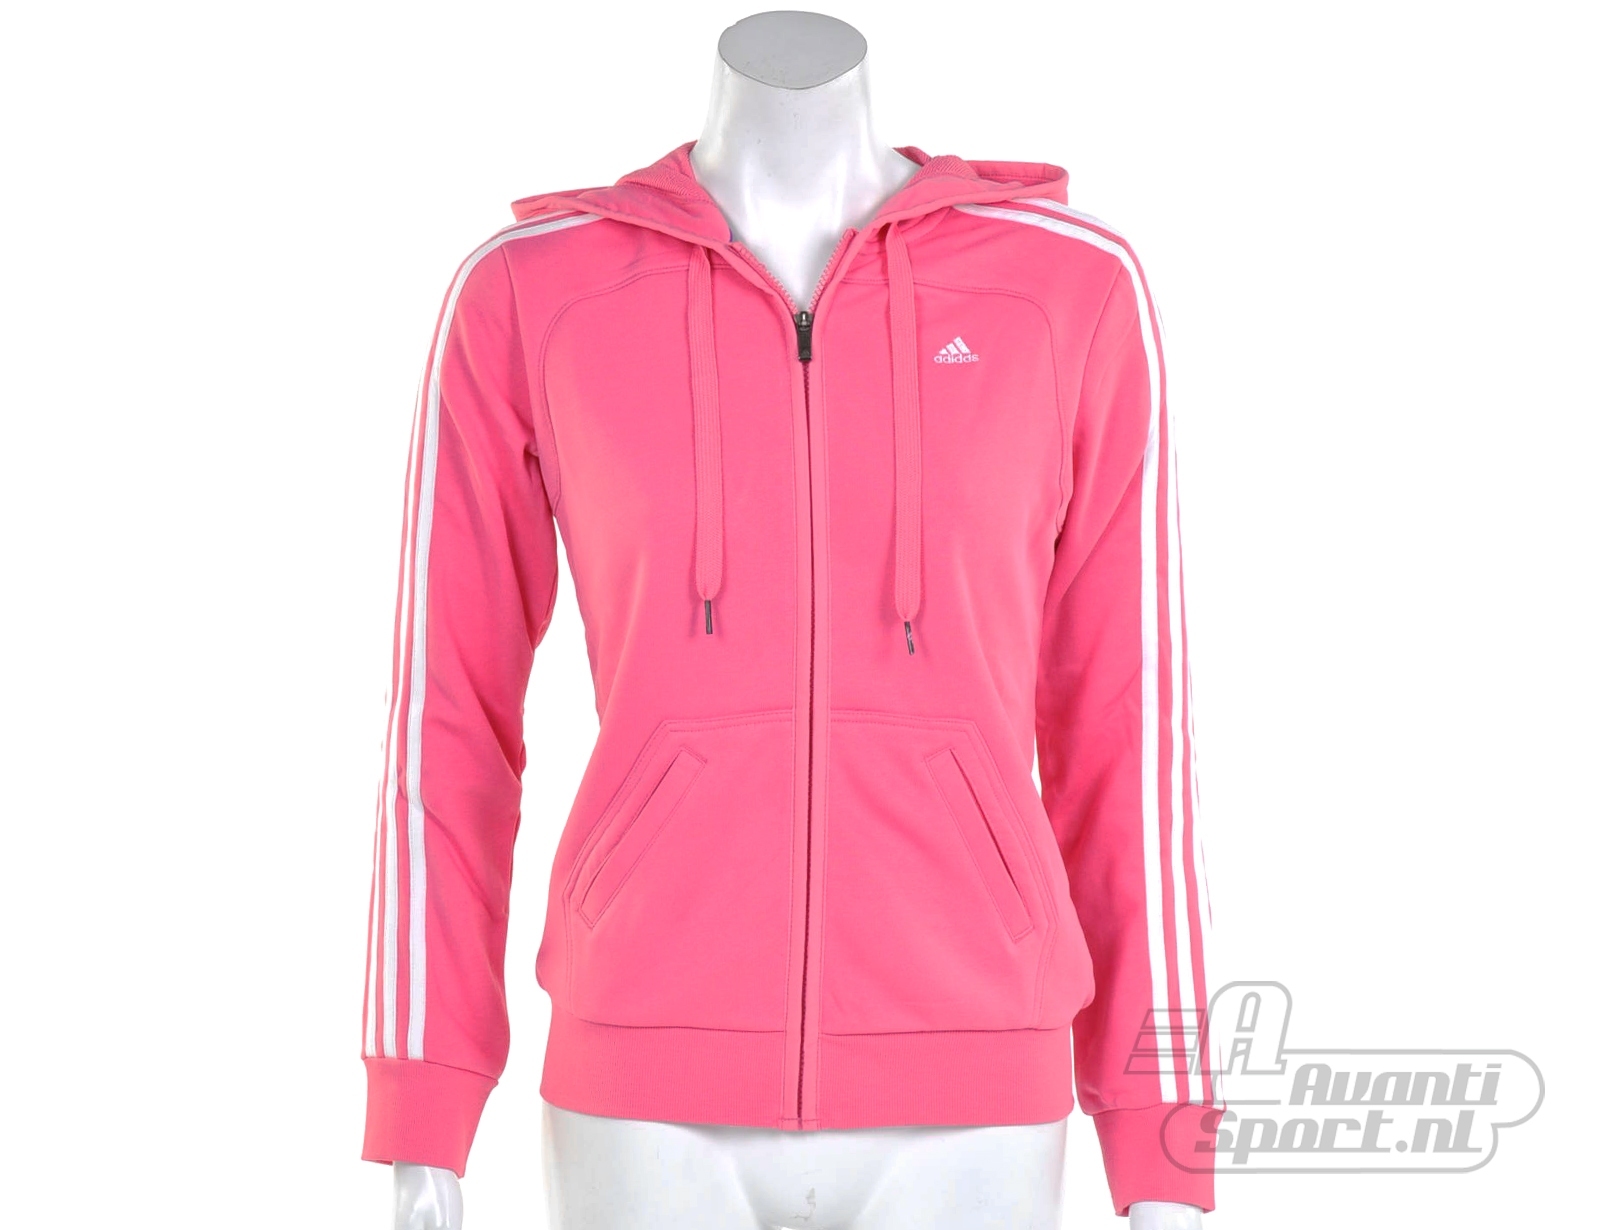 Avantisport - Adidas - Essentials 3 Stripes Hood Jacket - Adidas Jackets